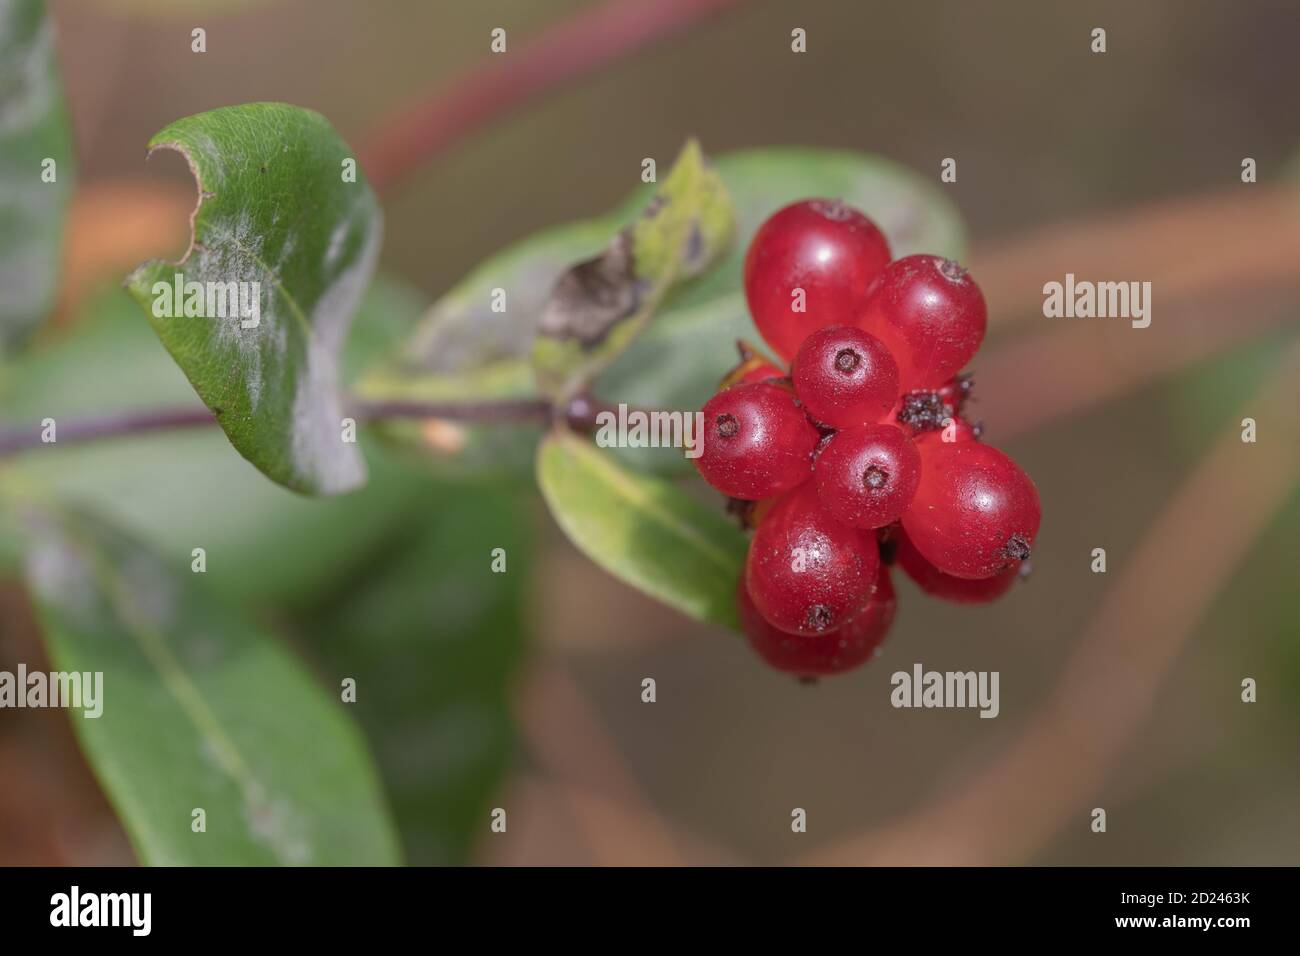 Geißblatt (Lonicera periclymenum). Rote Beeren oder Früchte, die mehrere  Samen enthalten, mit den Resten von Sepalen auf der Oberseite. Typisch  geformtes Blatt auf t Stockfotografie - Alamy